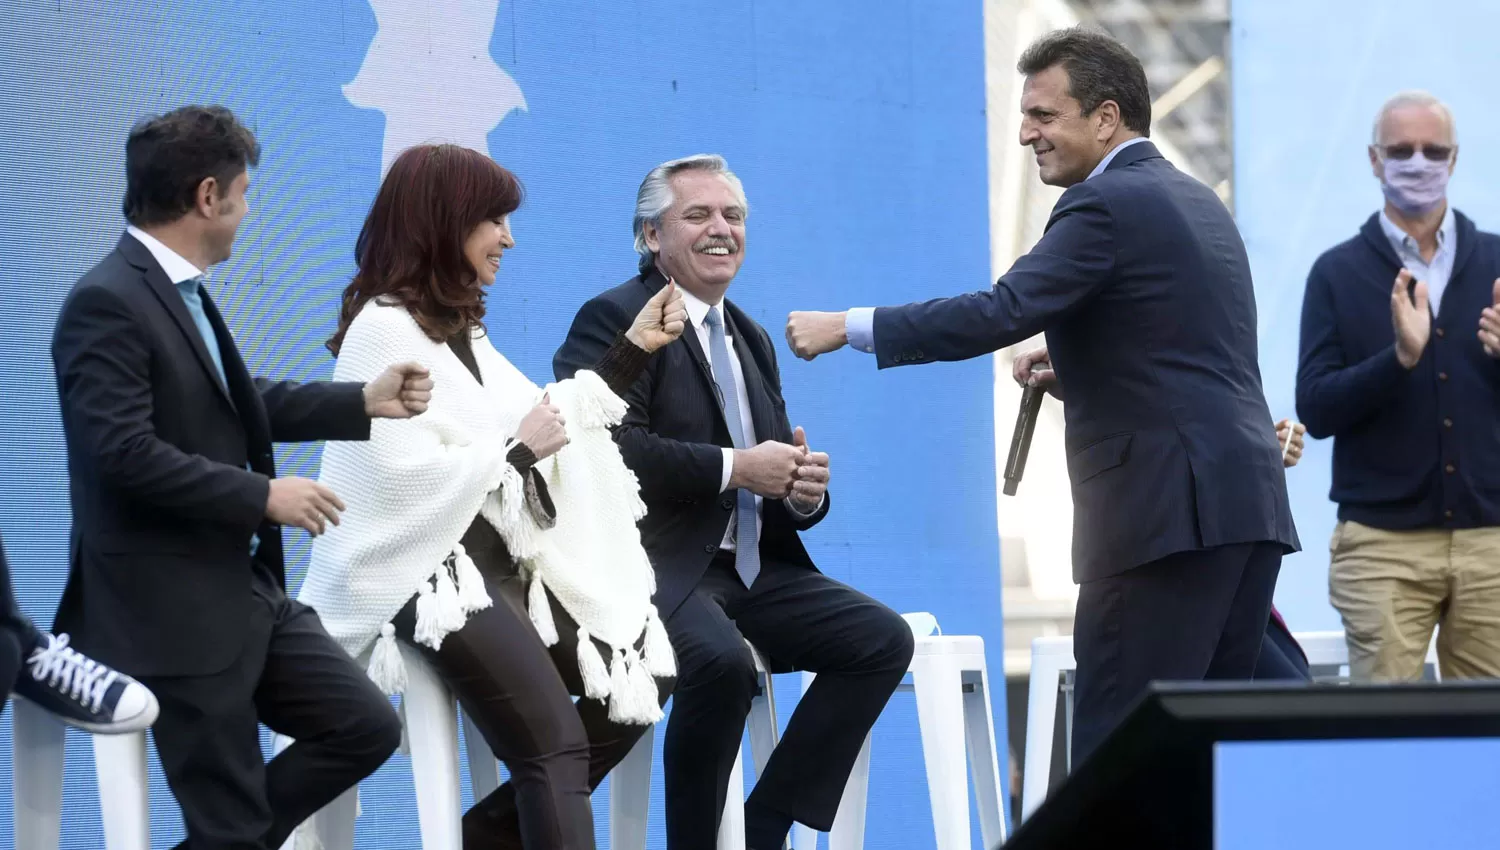 A PLENO. Alberto Fernández, Cristina Fernández, Sergio Massa y Axel Kicillof durante el plenario en La Plata.